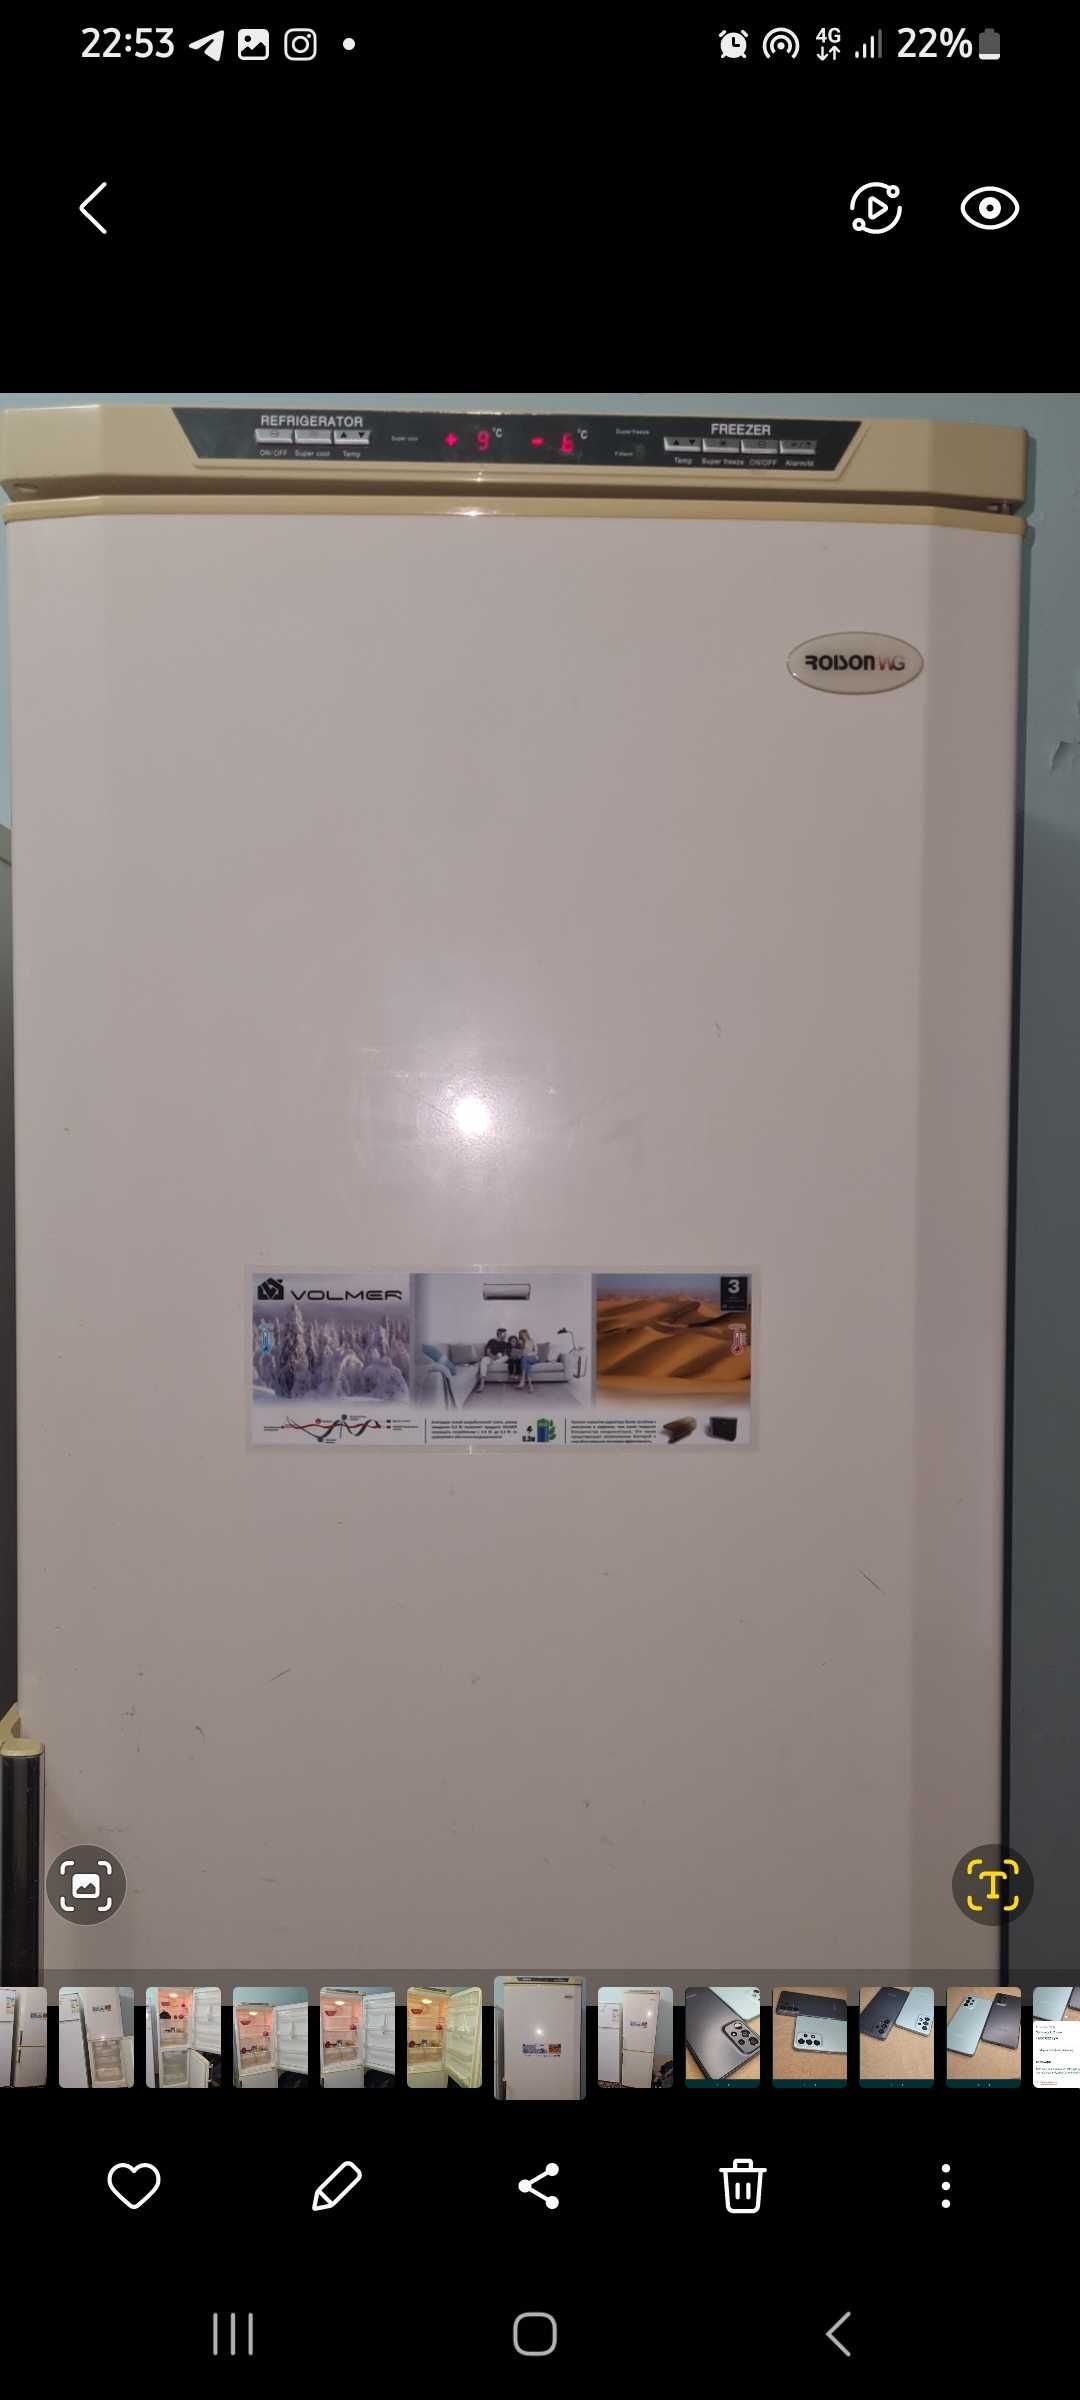 Ройсон Икки камерали сенсорный  инвентарь мотор холодильник сотилади